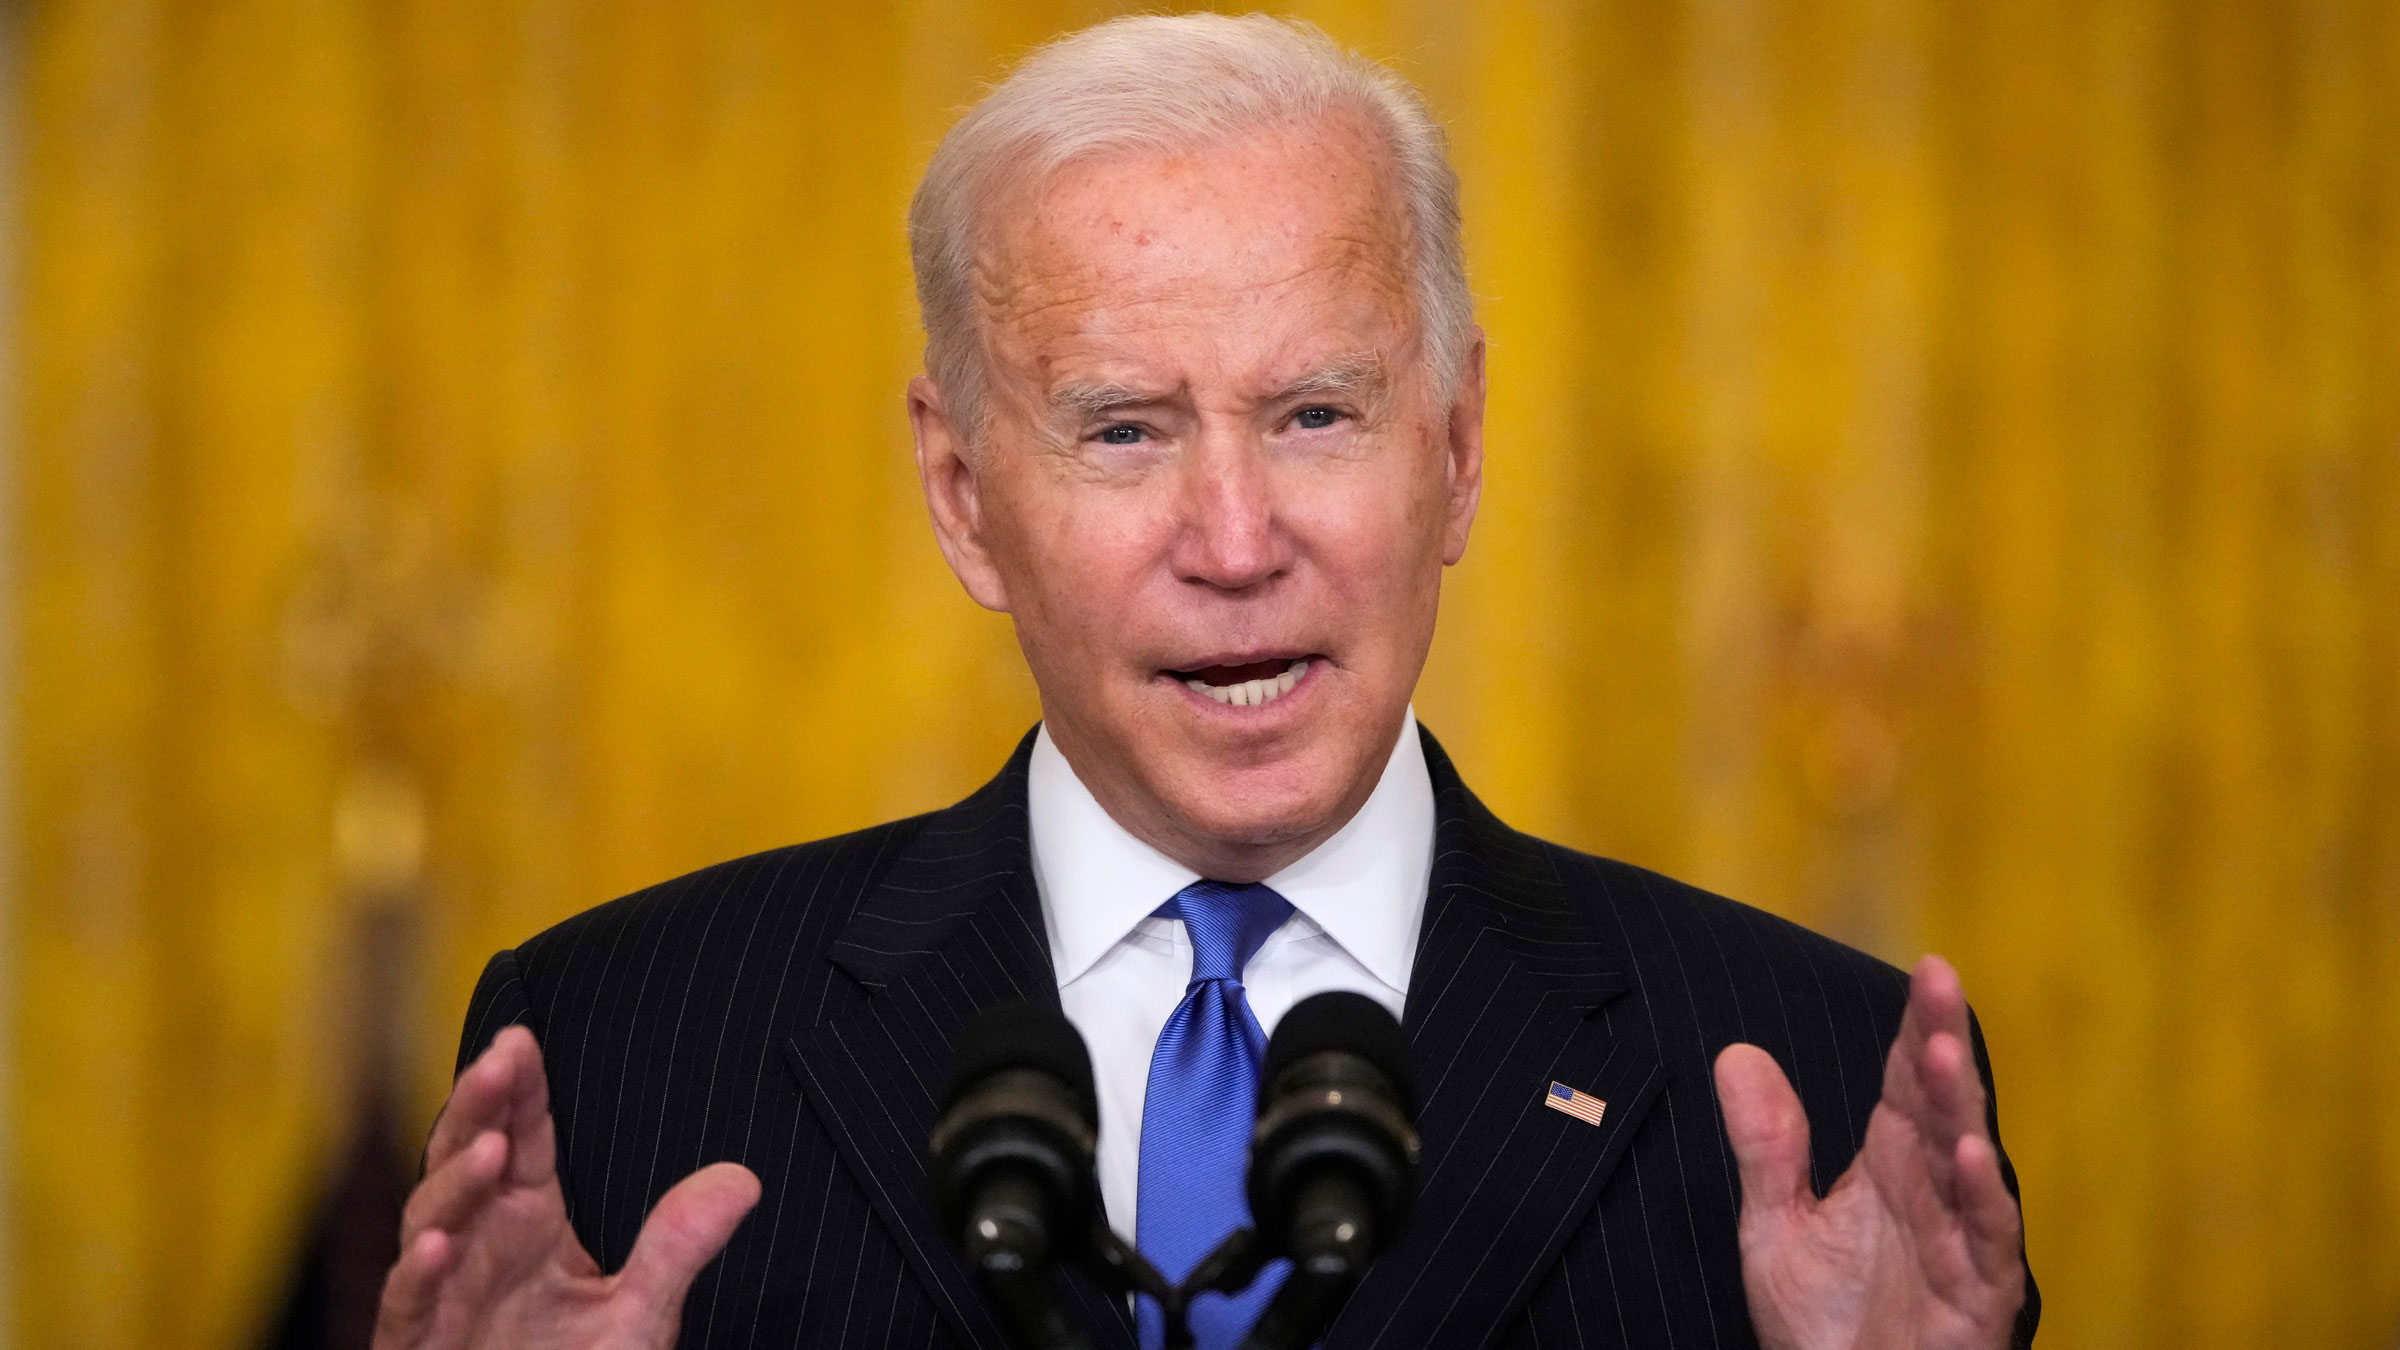 President Joe Biden speaks at the White House on Wednesday.